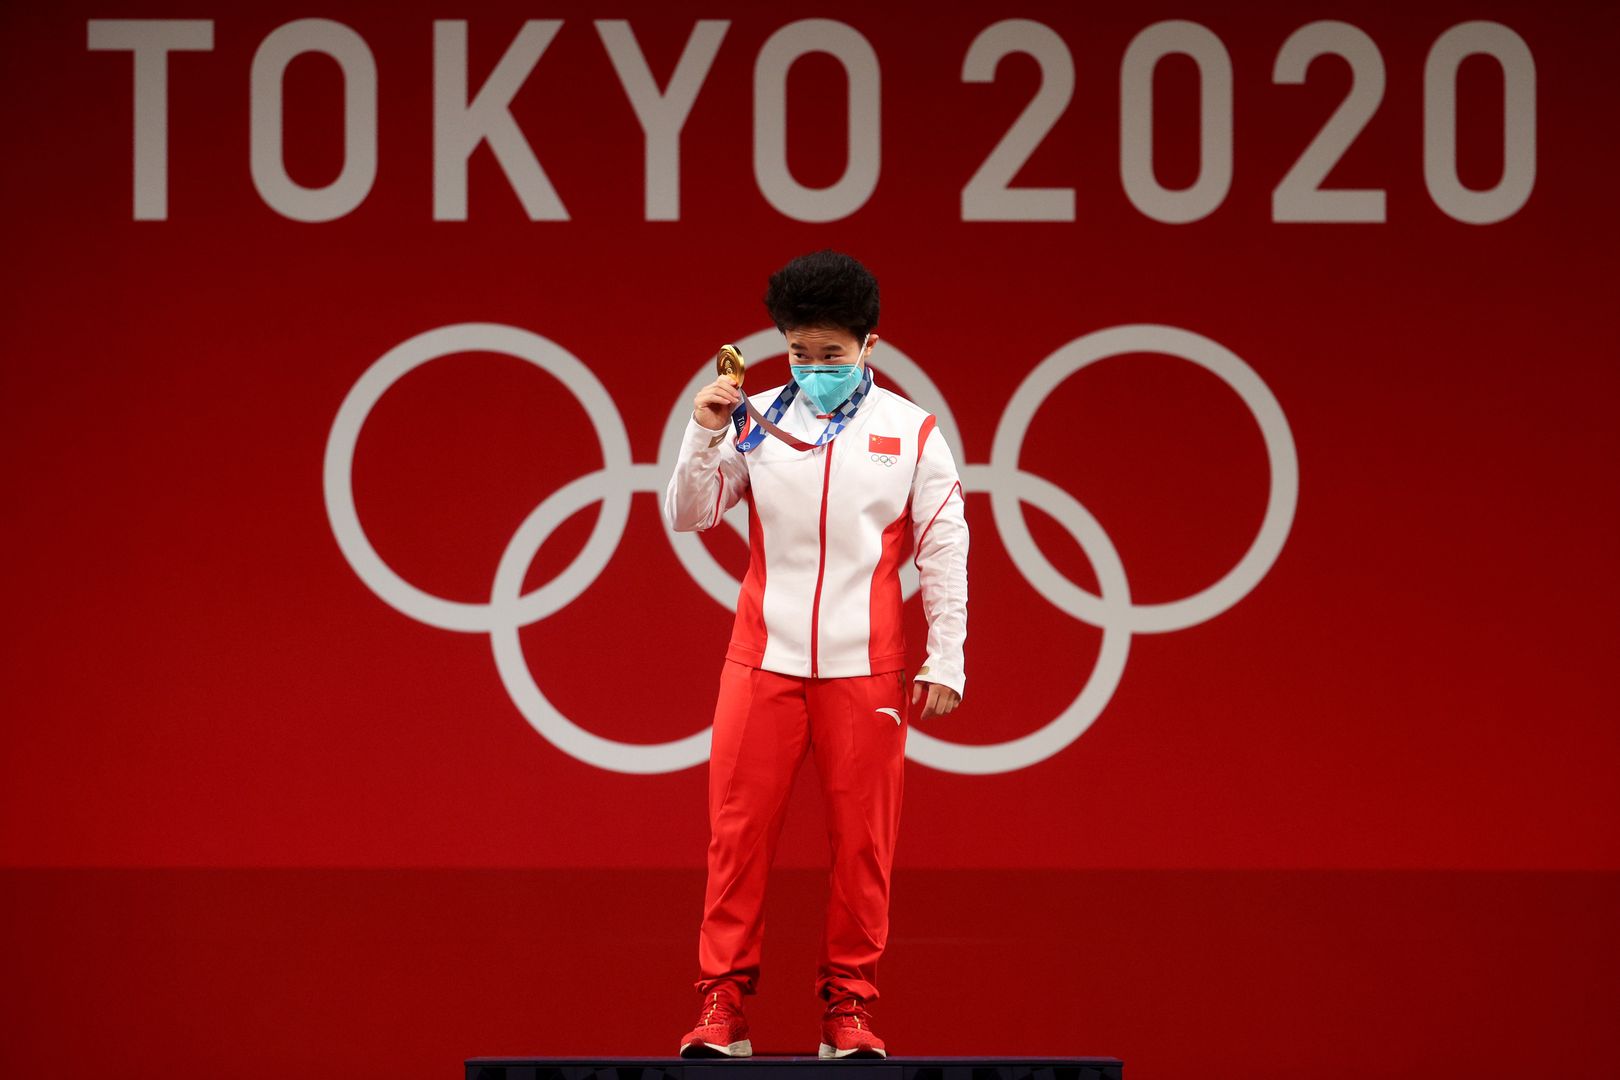 Chińska dyplomacja wściekła. Zdjęcie złotej medalistki wywołało skandal w Tokio